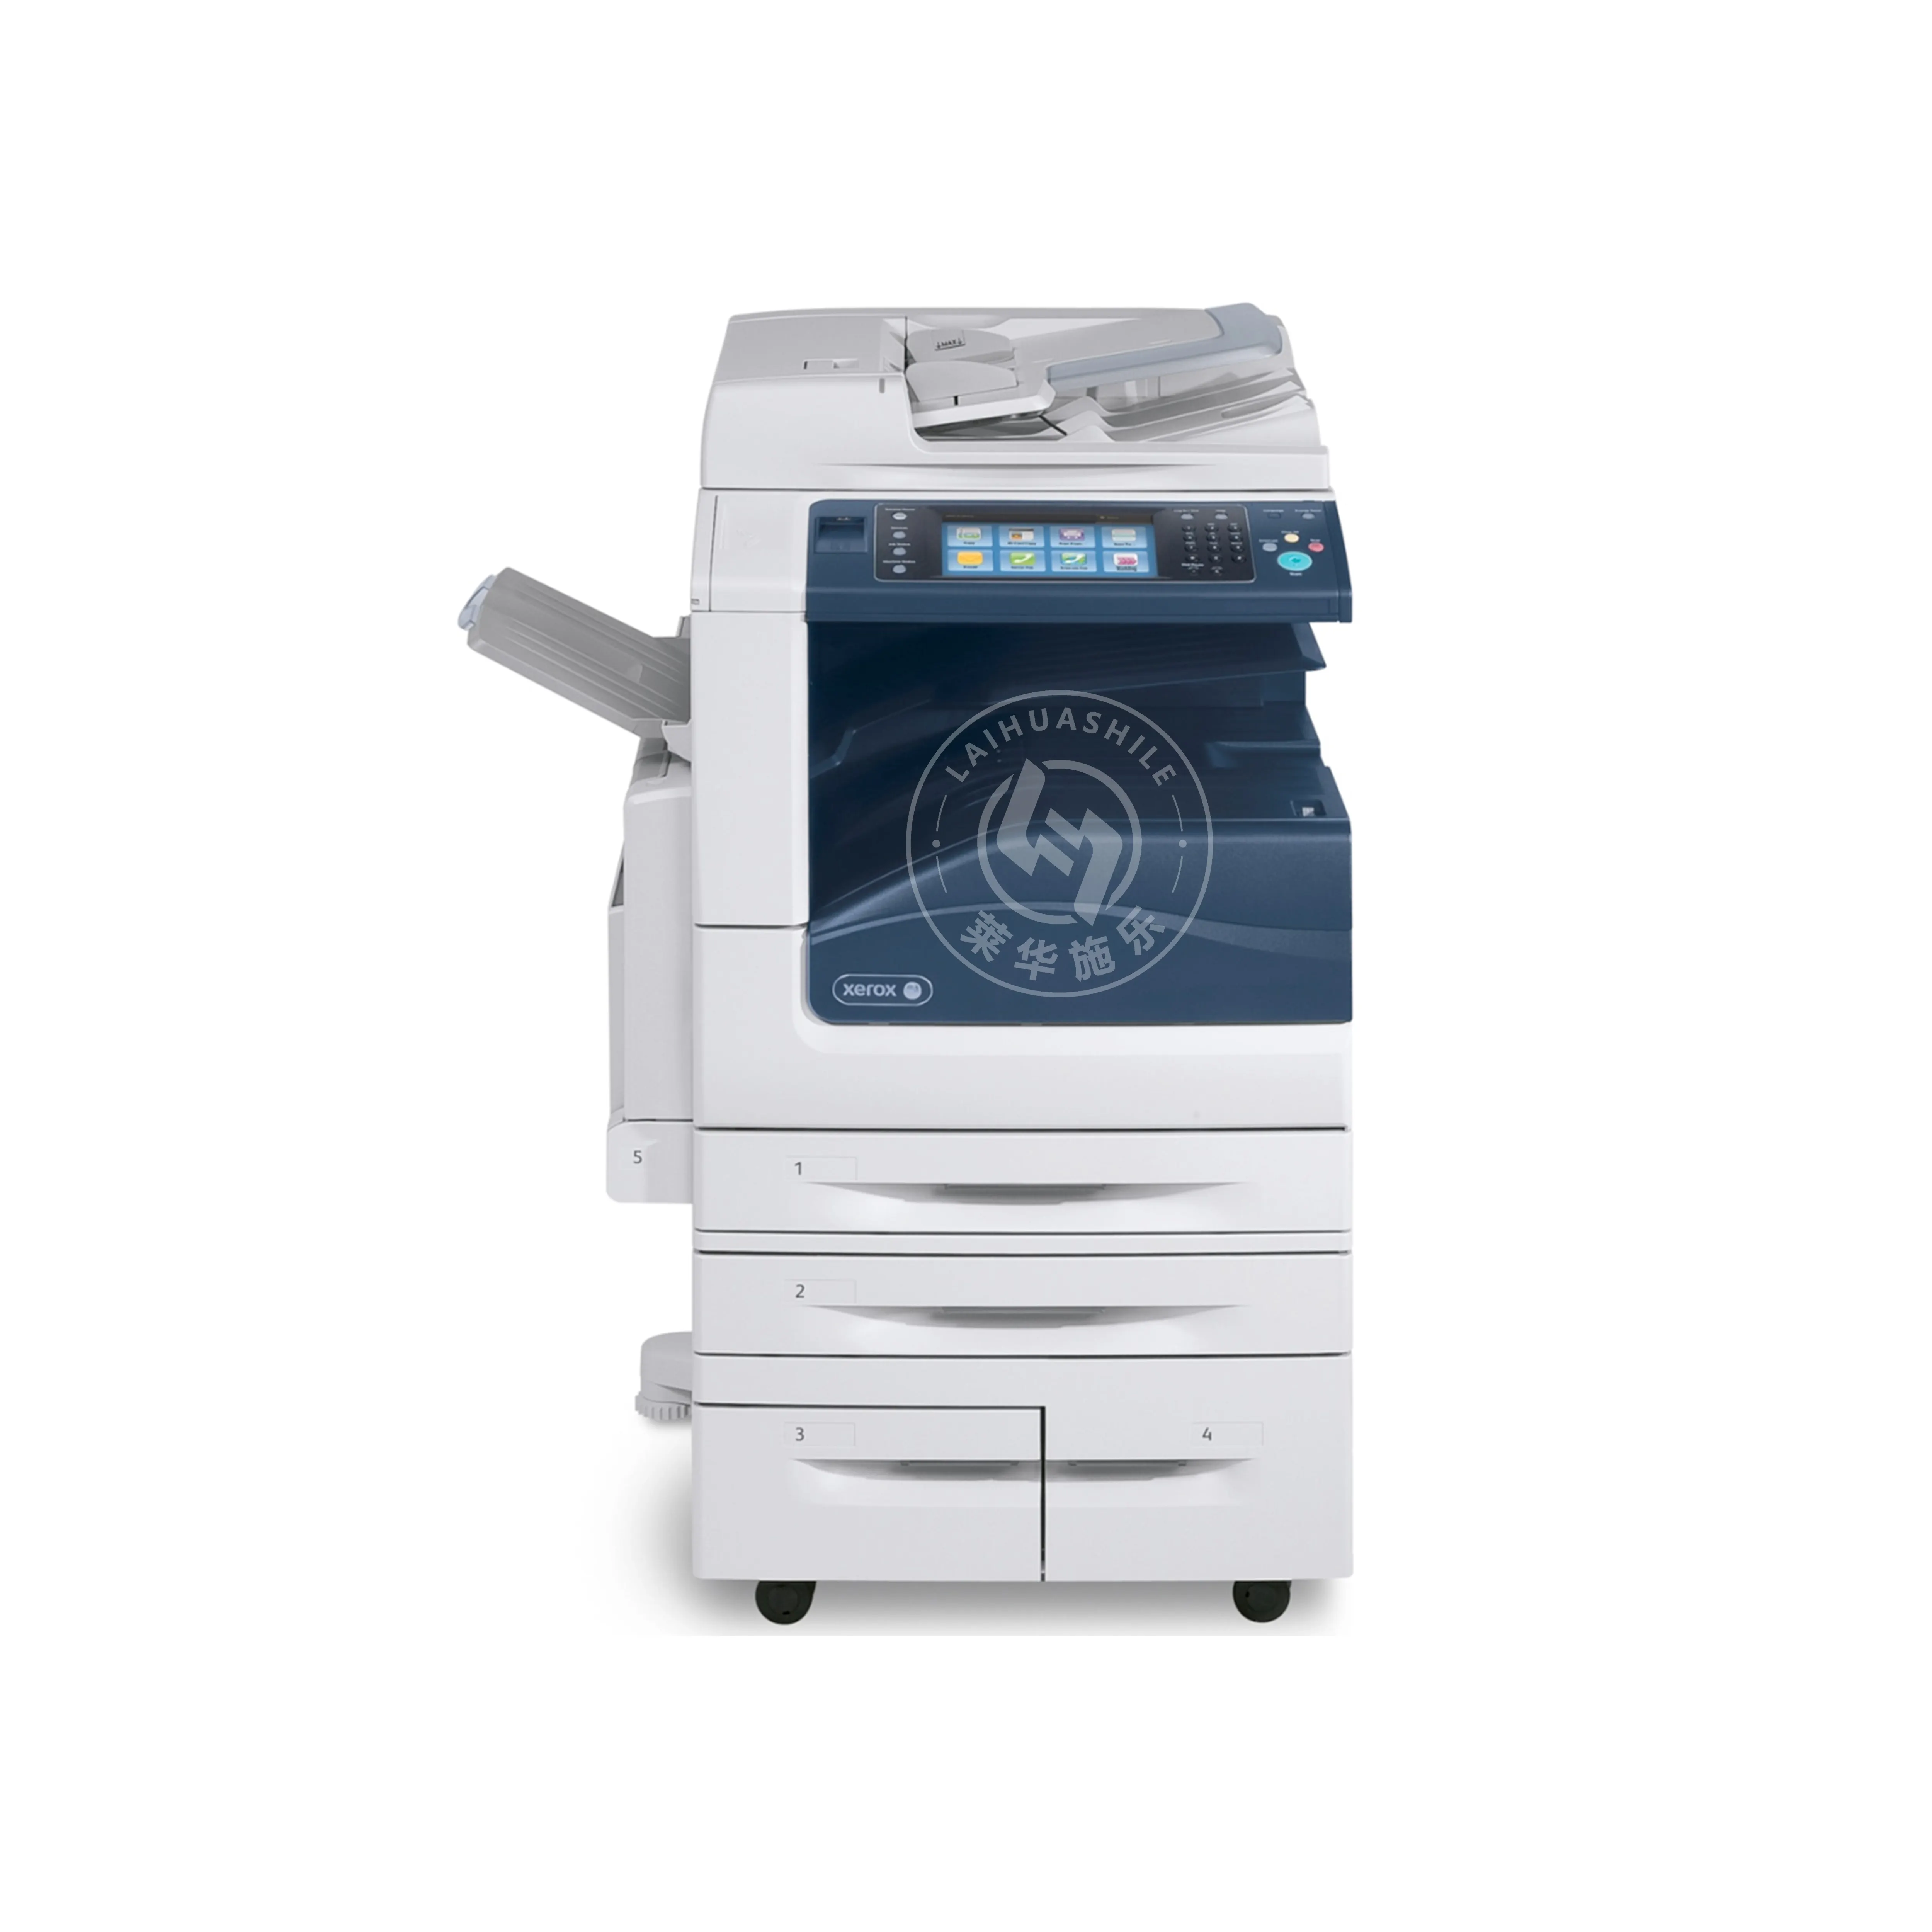 Xerox WC ofis ekipmanları 7835 7845 fotoğraf makinesi için 7855 yazıcı tarayıcı ve fotokopi makinesi